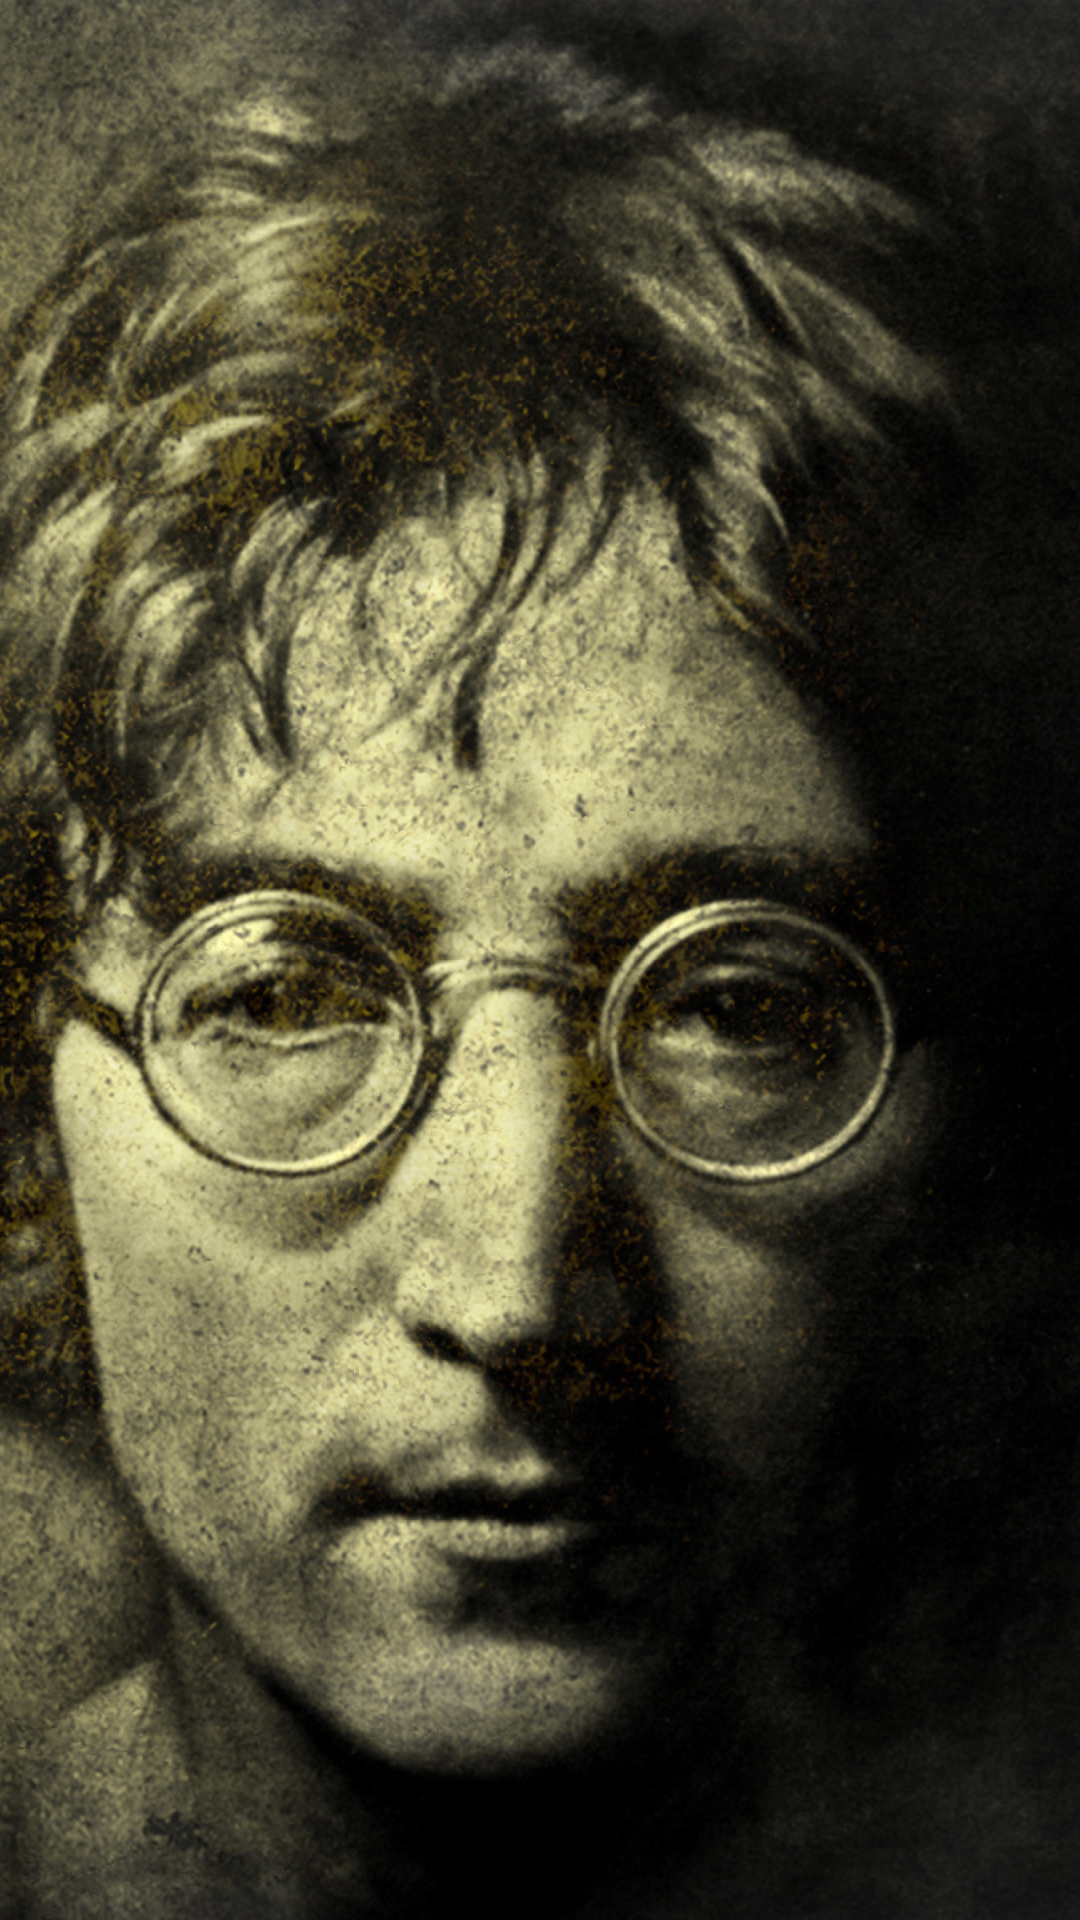 John Lennon wallpaper 1080x1920